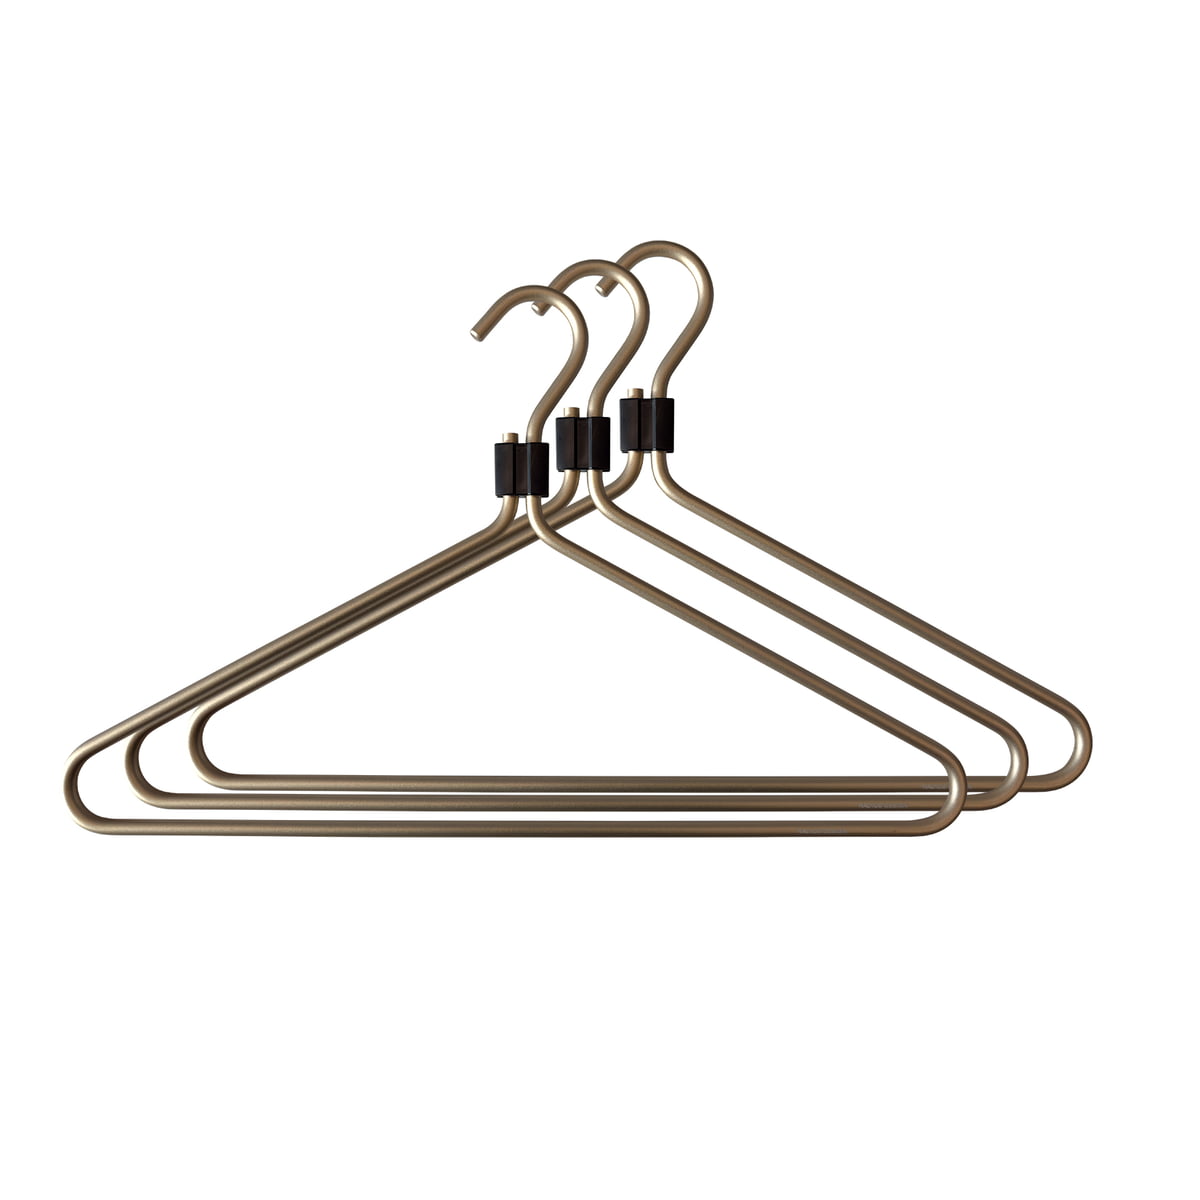 Wire Coat Hangers Set of 5/10/20 Black Clothes Hangers Metal Wire